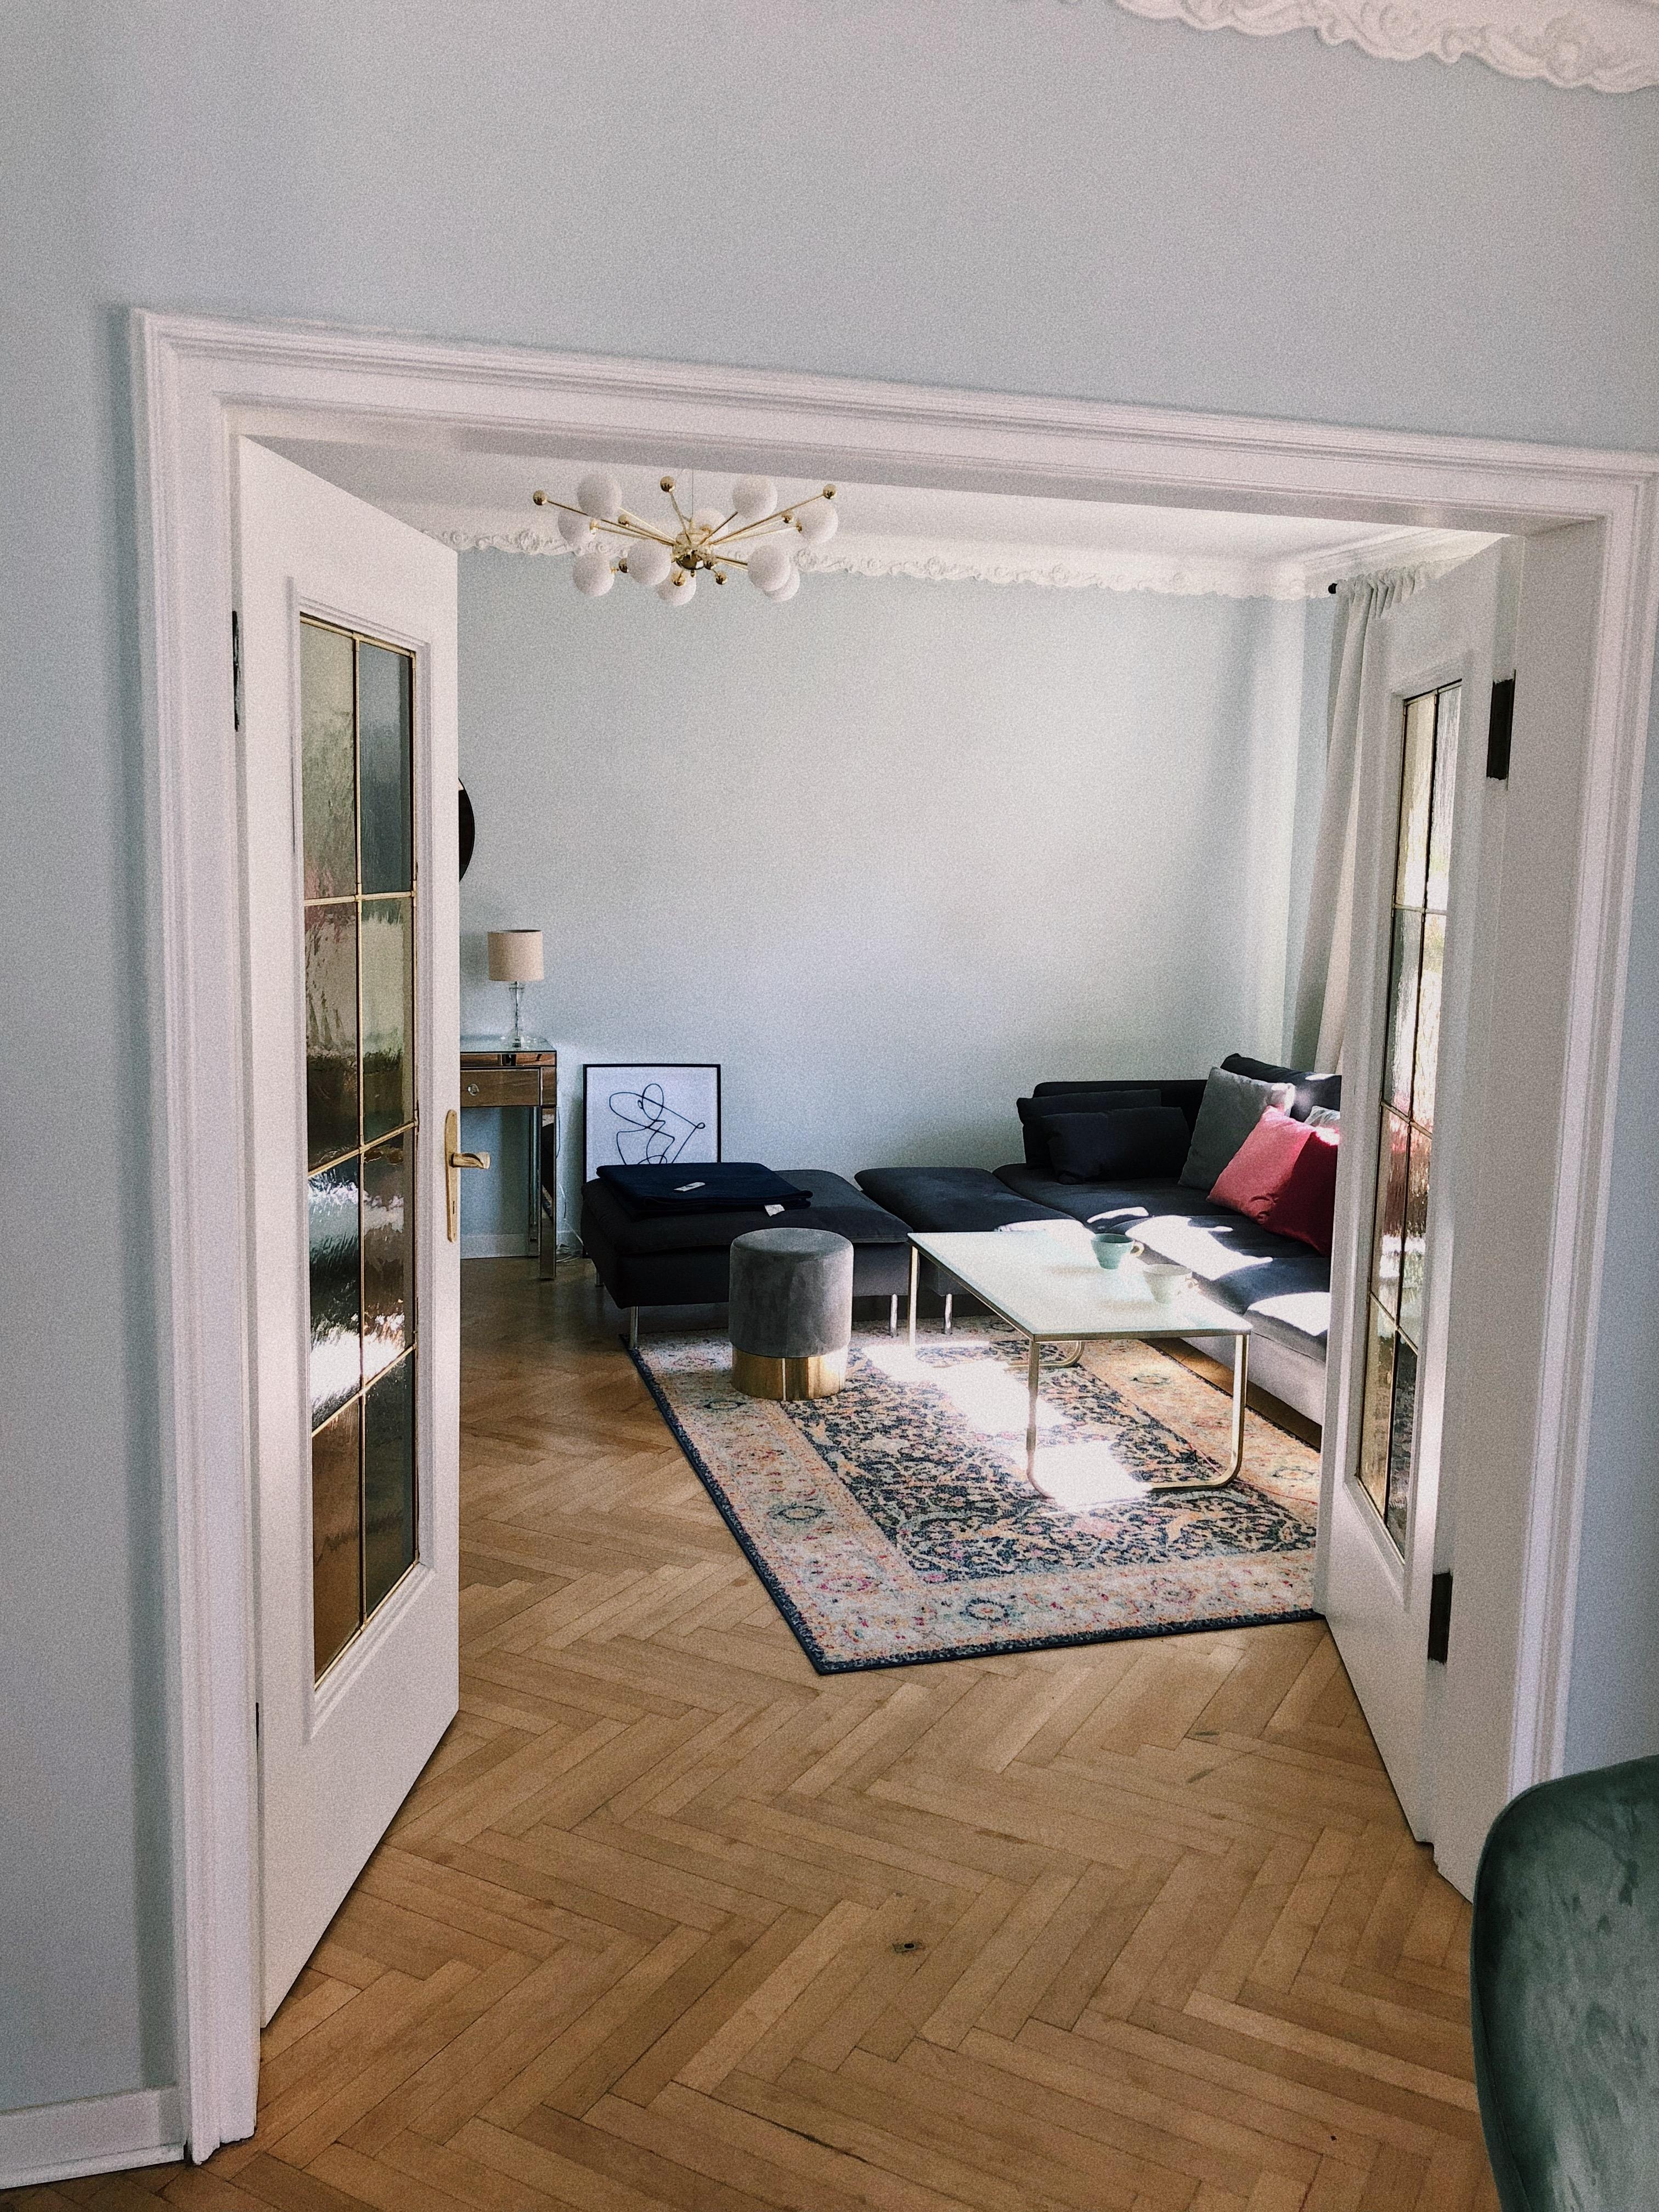 Liebe Grüße aus meinem Wohn und Essbereich. #wohnzimmer #essbereich # einrichtungsidee #vintageteppich #nordic #stilmix